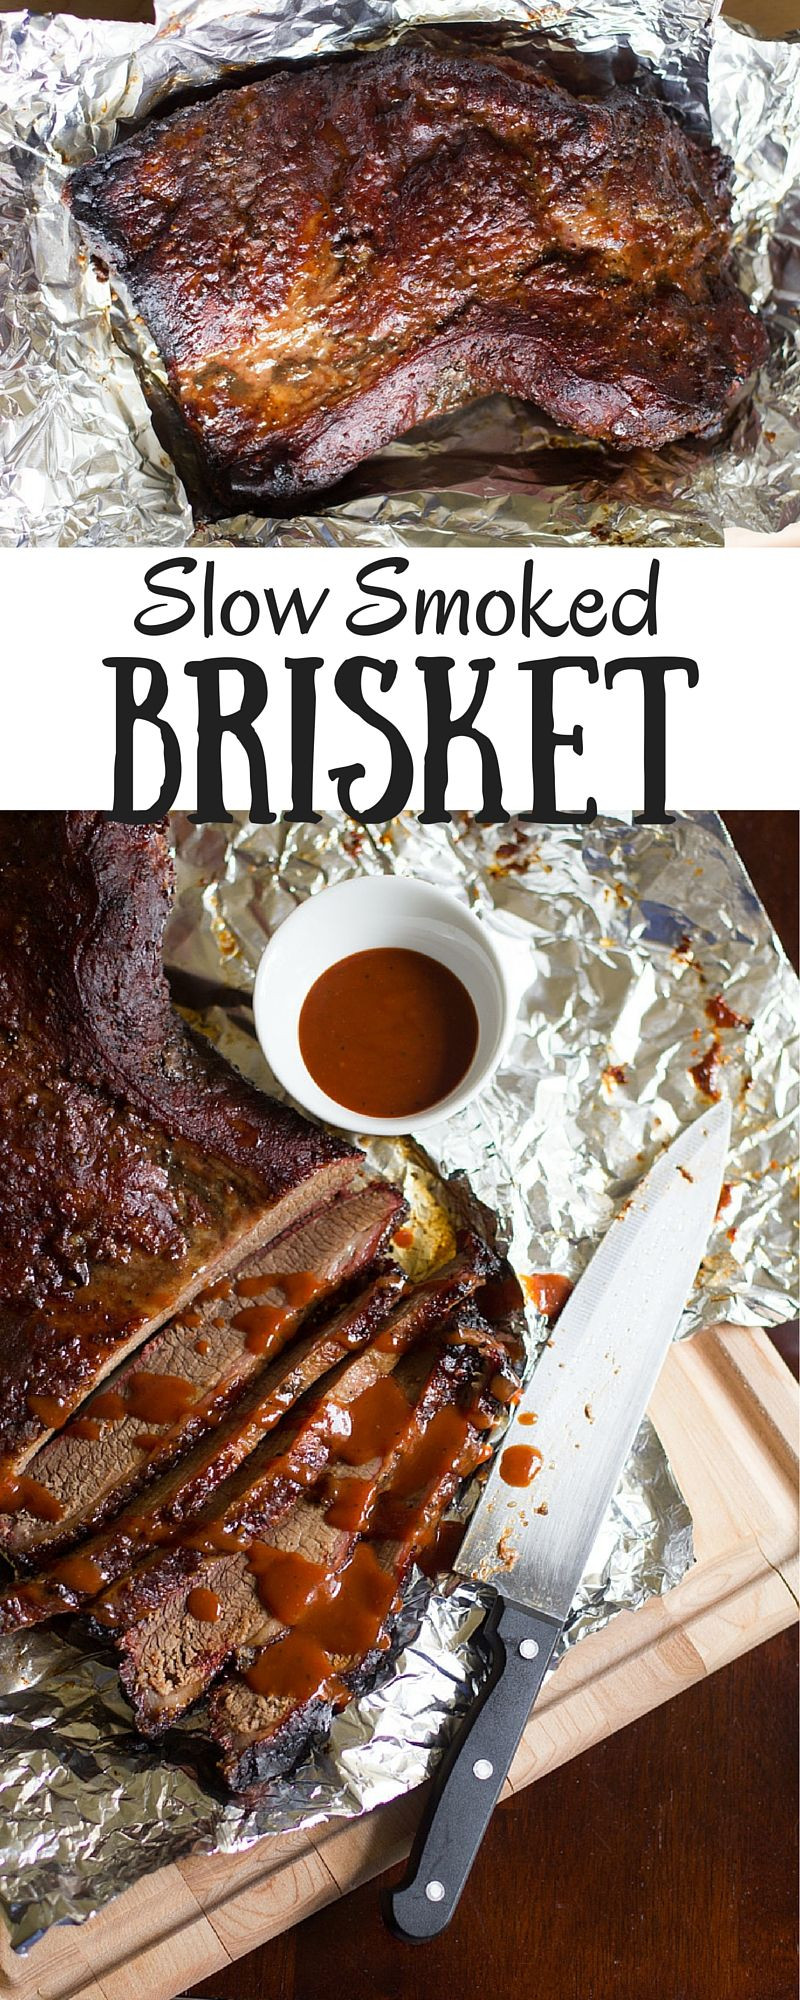 Beef Brisket Recipe Grill
 Slow Smoked Brisket Recipe